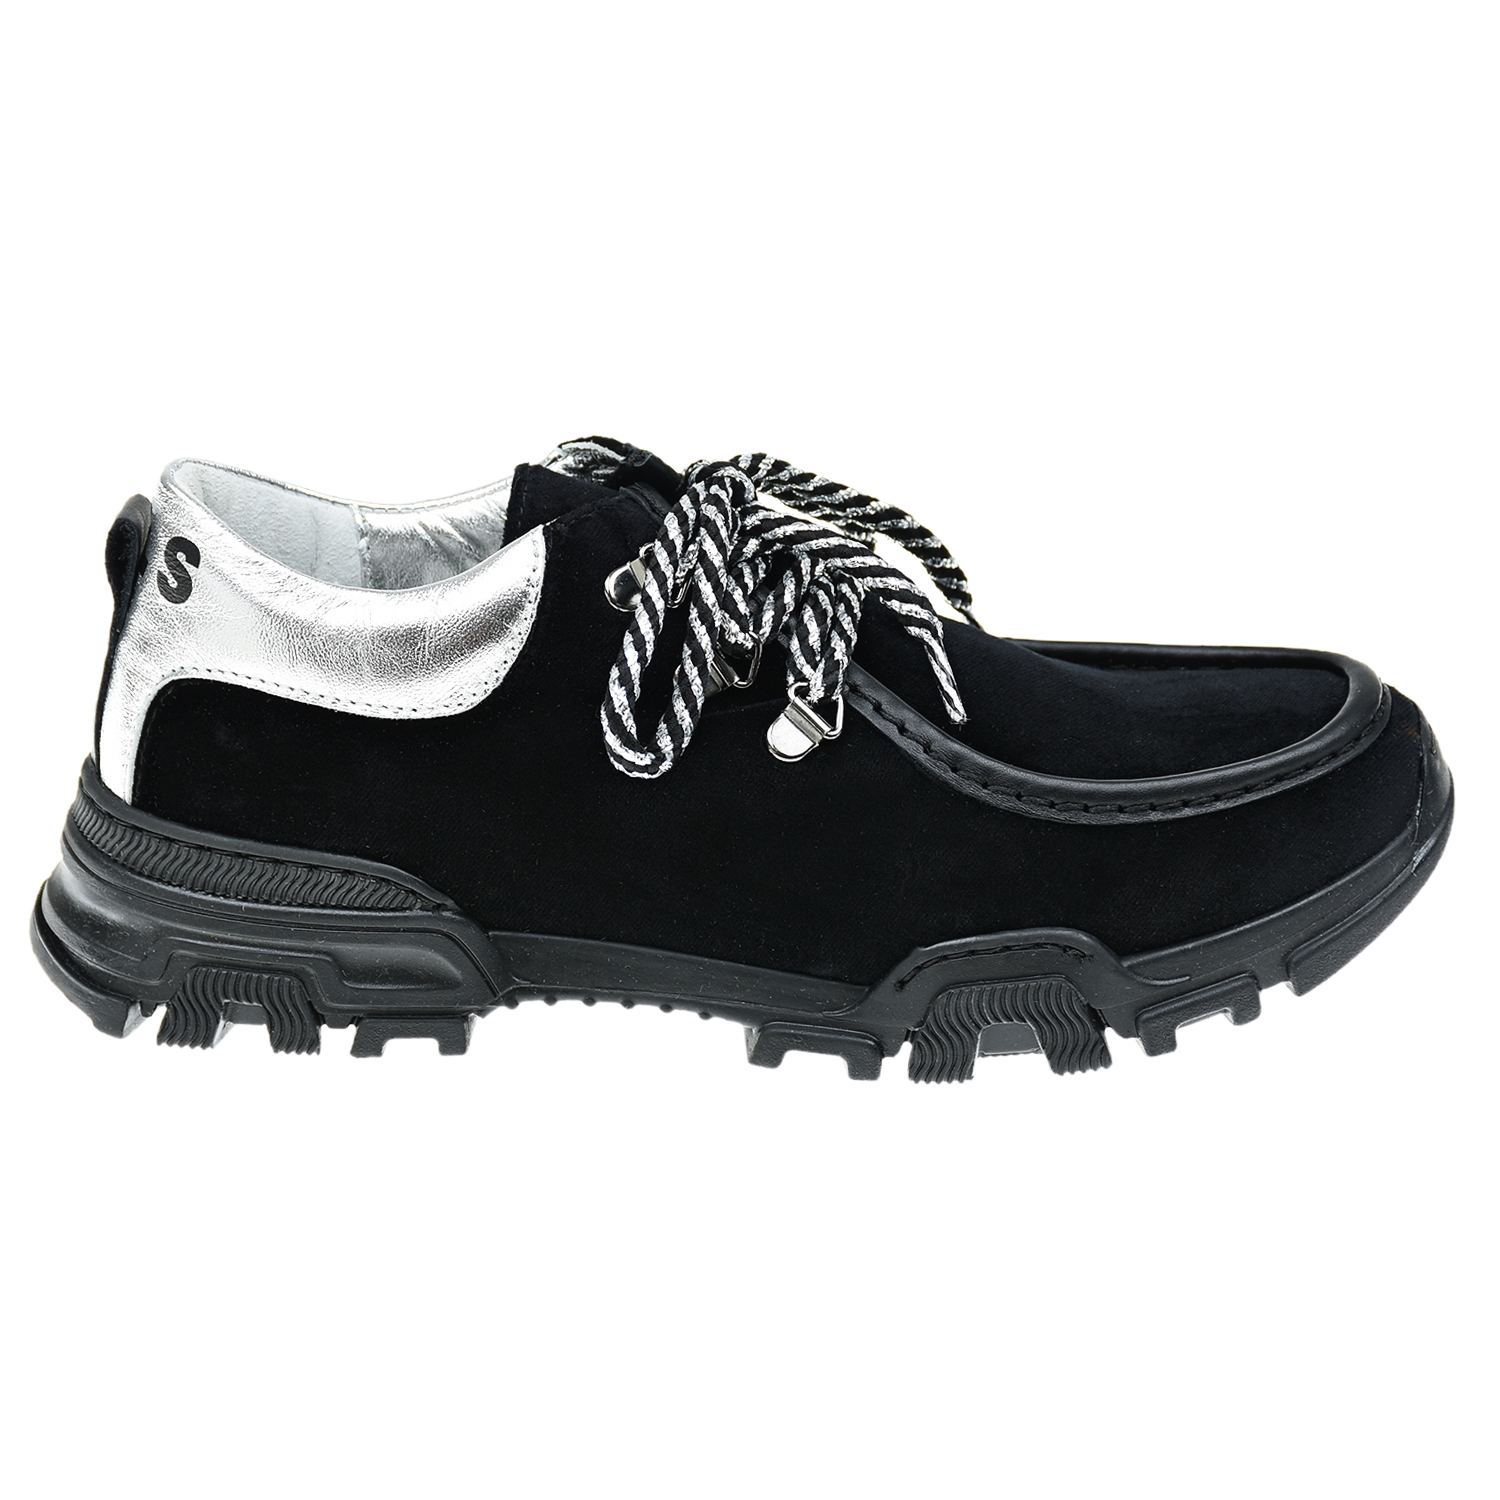 Низкие ботинки для девочек Monnalisa детские, размер 38, цвет черный - фото 2